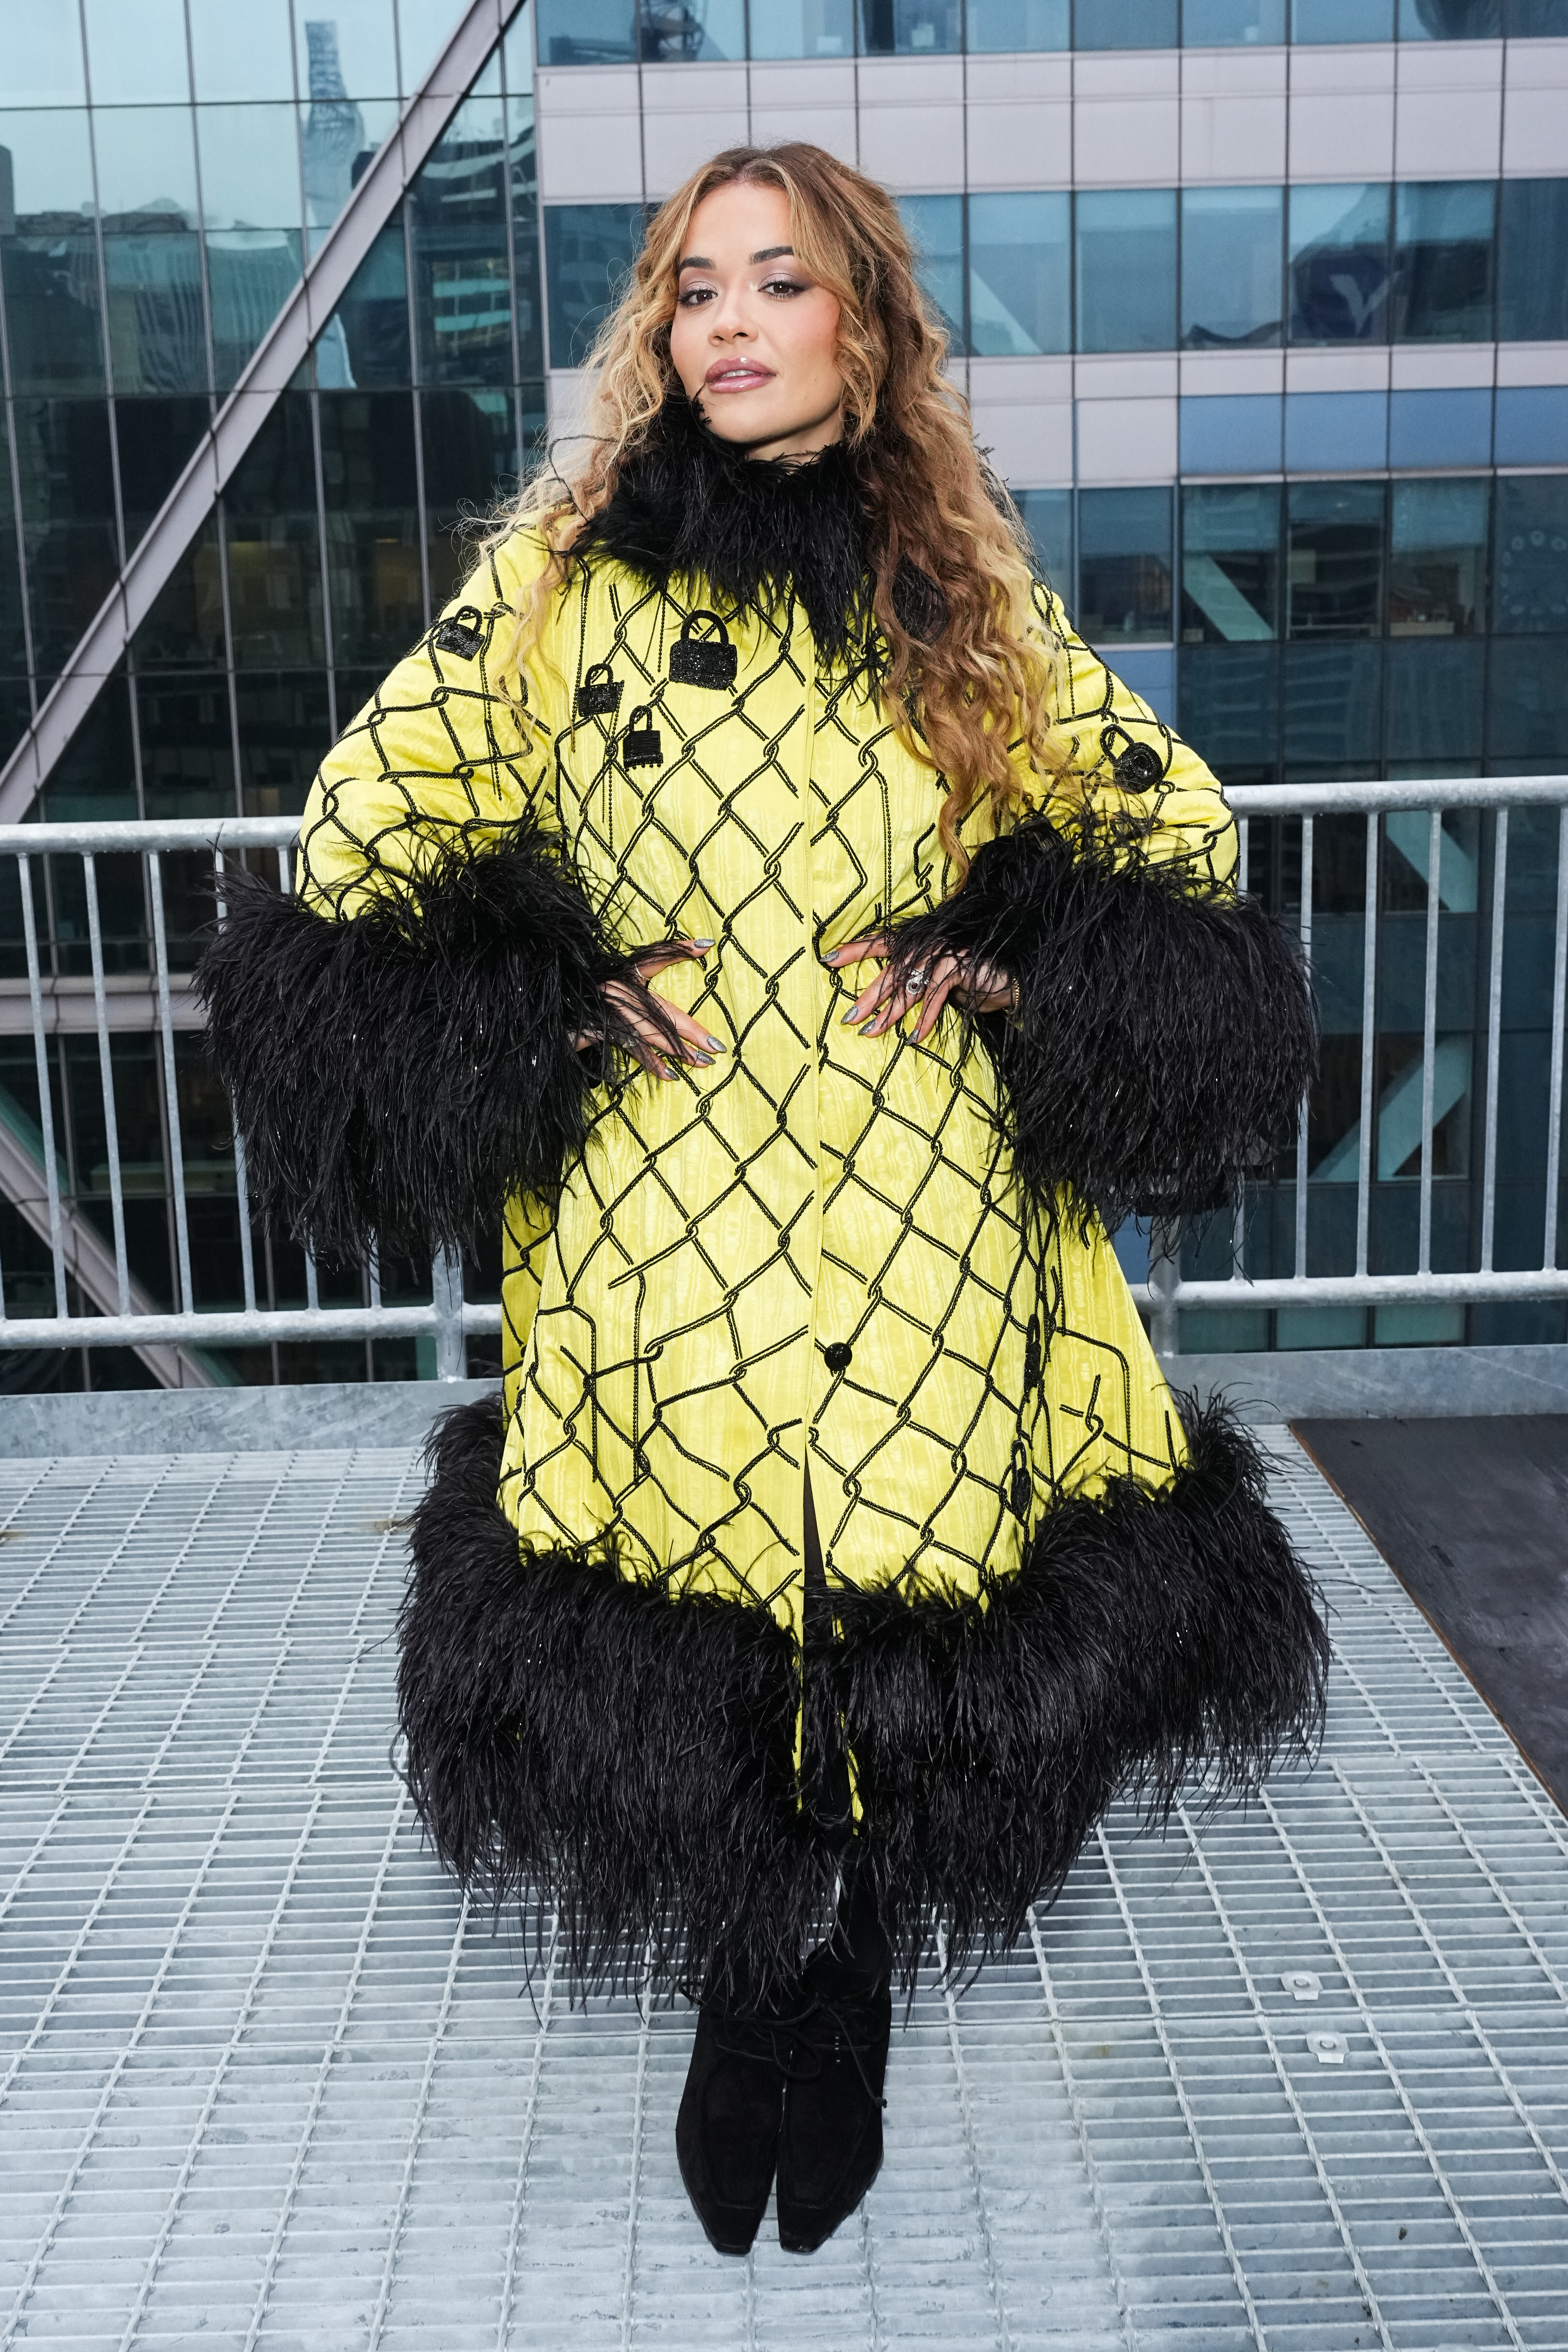 Rita Ora abgebildet in einem gelben Mantel mit Rüschenbesatz